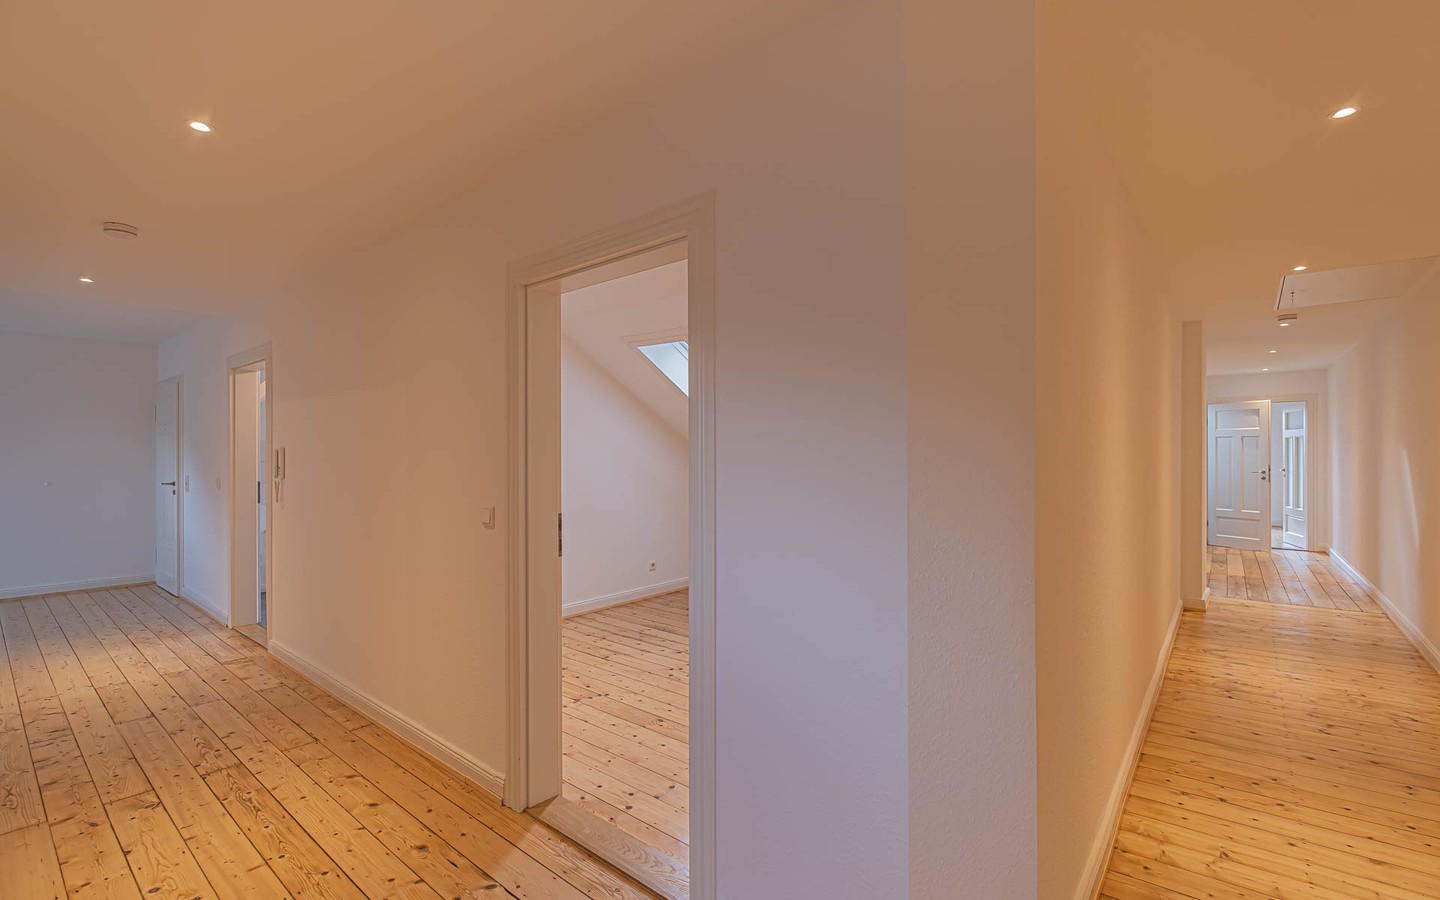 Flur - Rarität – Dachgeschosswohnung mit Schlossblick -
 Ideal für kreative Singles oder Paare